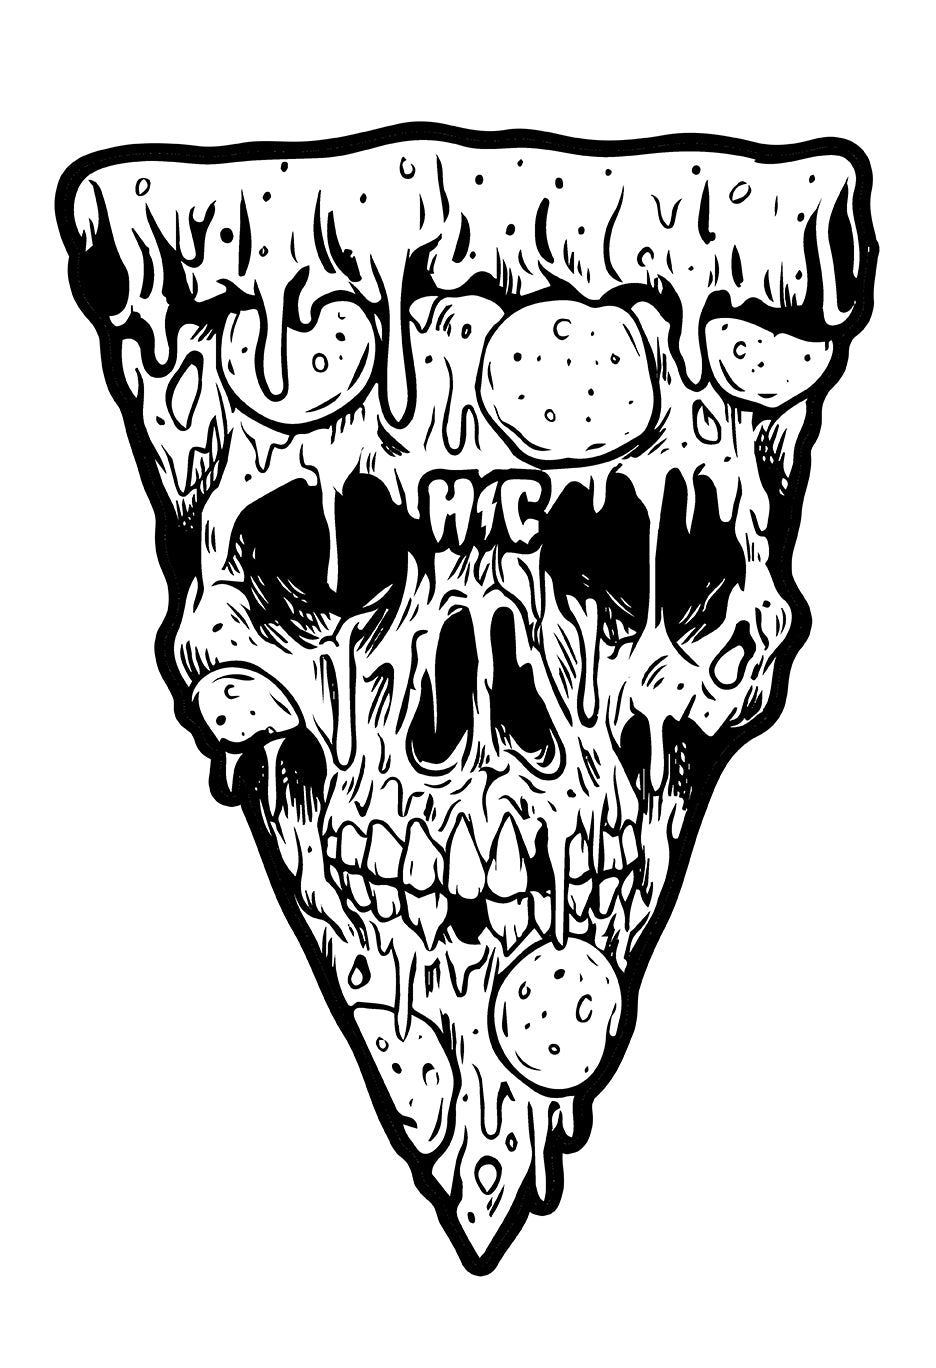 Pizza Skull Black & White 13 x 19 Poster Print